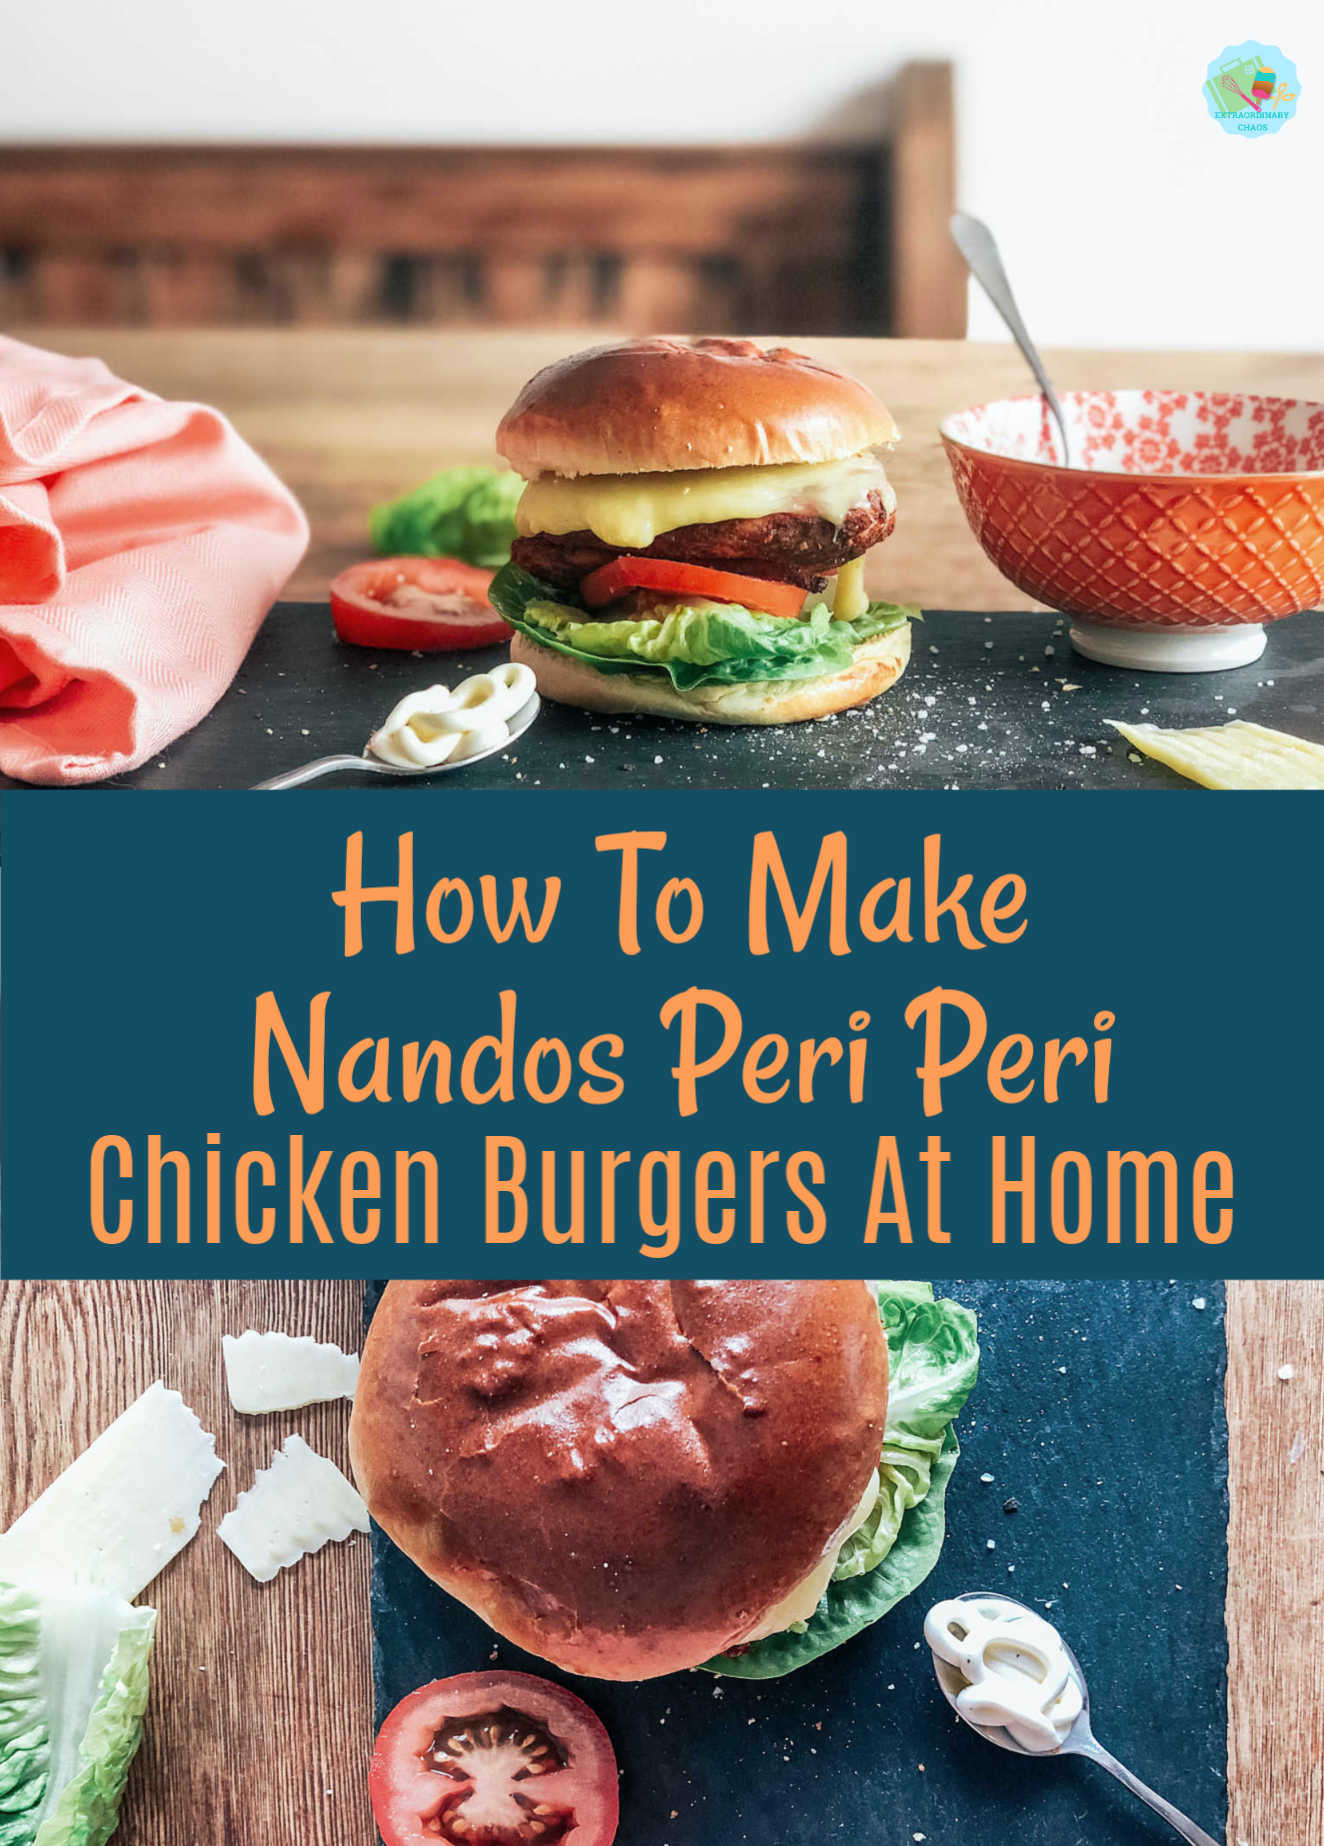 How To Make Nandos Peri Peri Chicken Burgers At Home